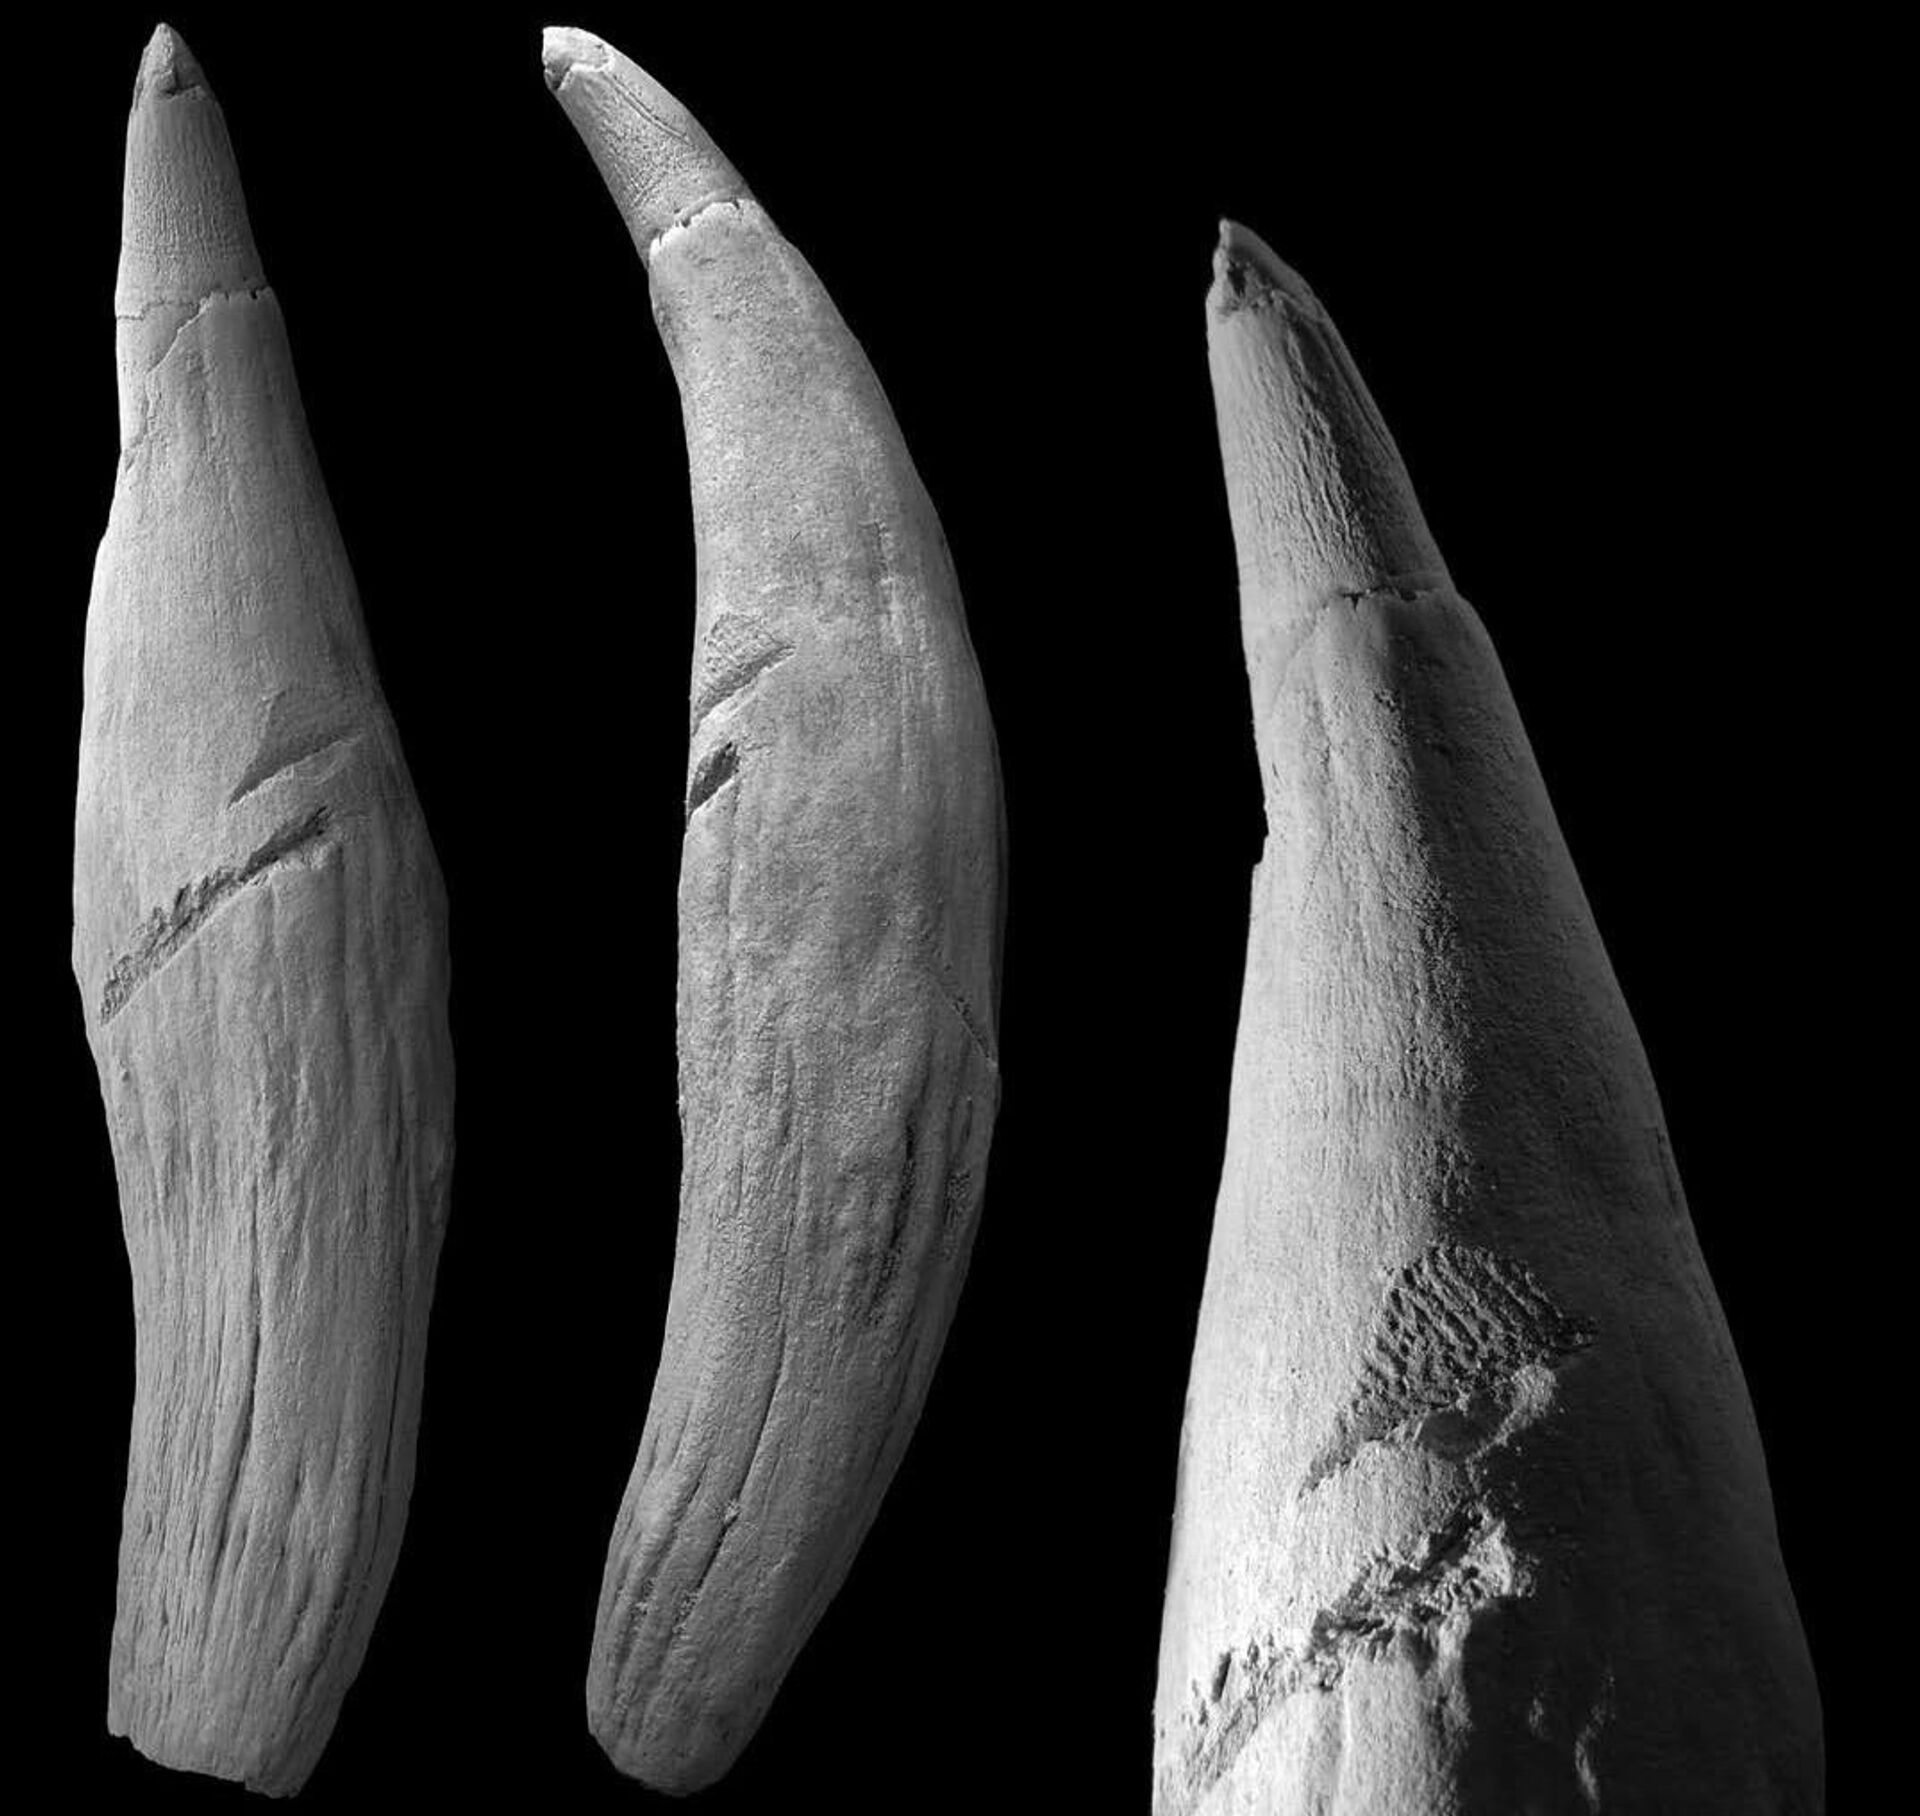 Fóssil de dente ajuda a recriar 1º ataque de tubarão a cachalote na história (FOTO) - Sputnik Brasil, 1920, 25.08.2021